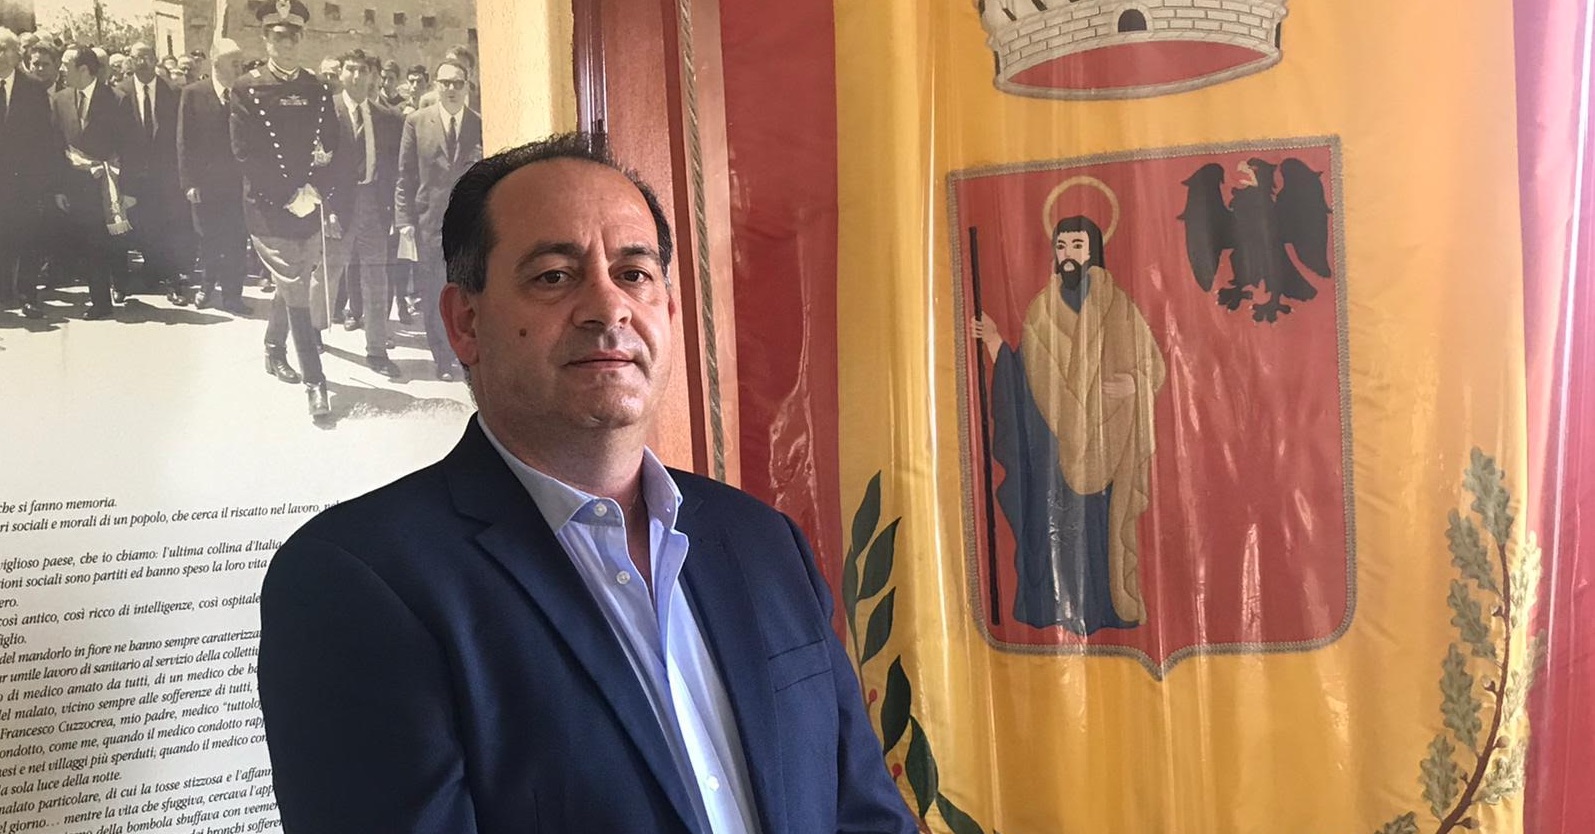 Motta San Giovanni, Mallamaci: «Gattuso? La decisione spetta al Consiglio»